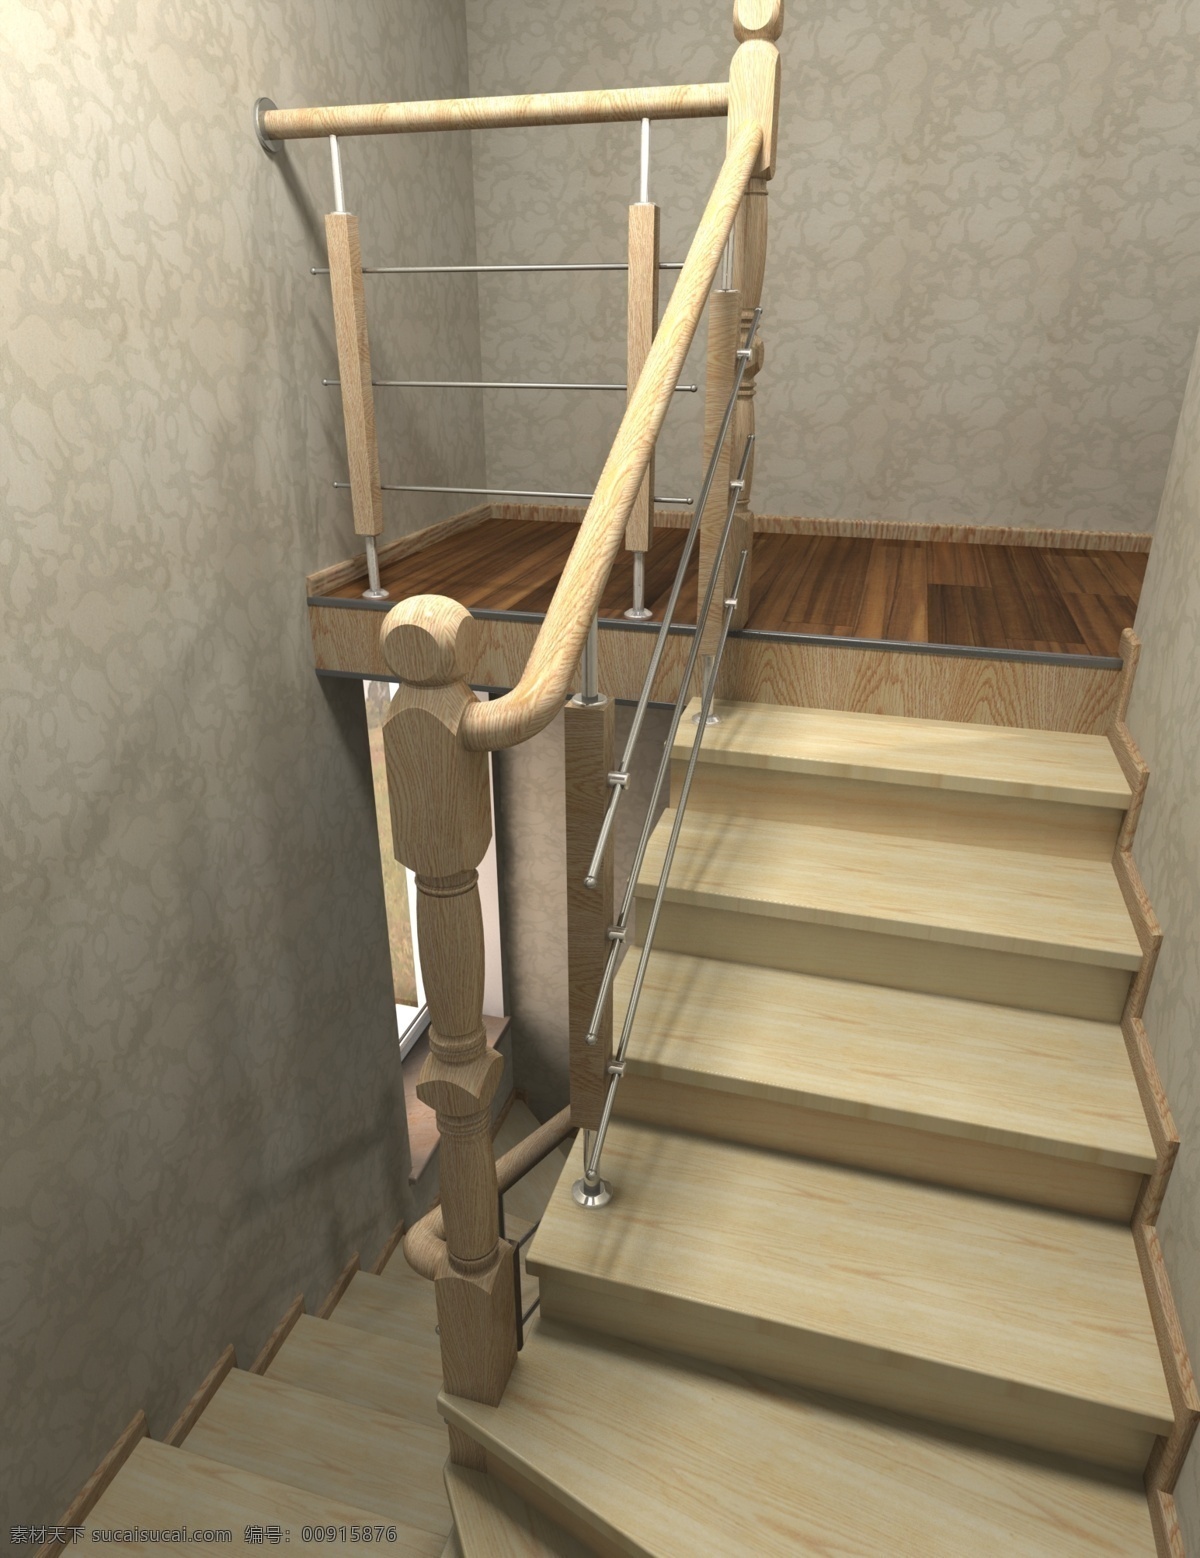 步行 梯 建筑 室内设计 3d模型素材 建筑模型